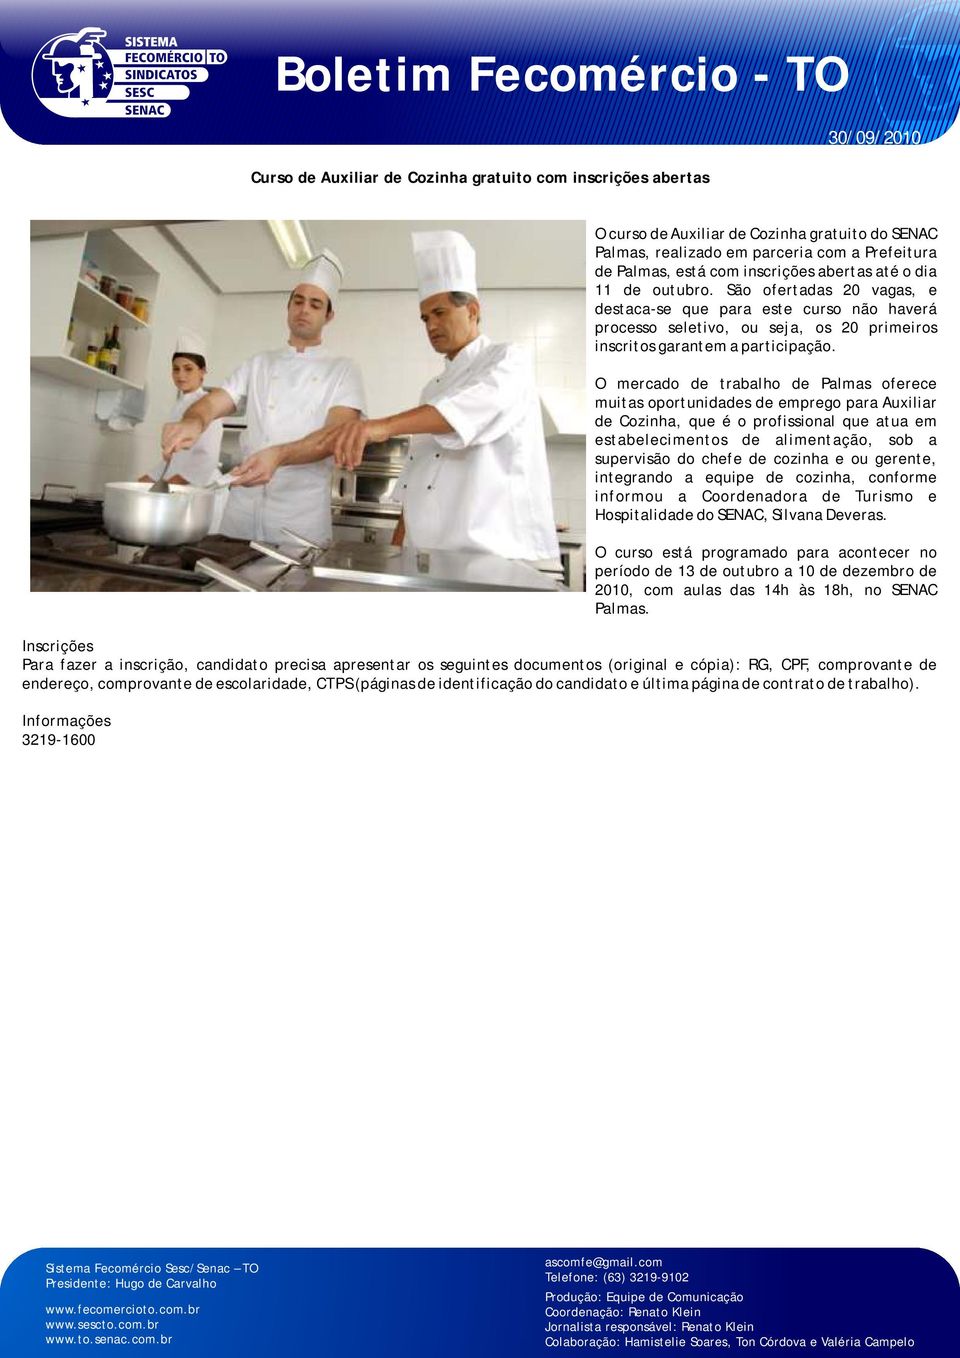 O mercado de trabalho de Palmas oferece muitas oportunidades de emprego para Auxiliar de Cozinha, que é o profissional que atua em estabelecimentos de alimentação, sob a supervisão do chefe de